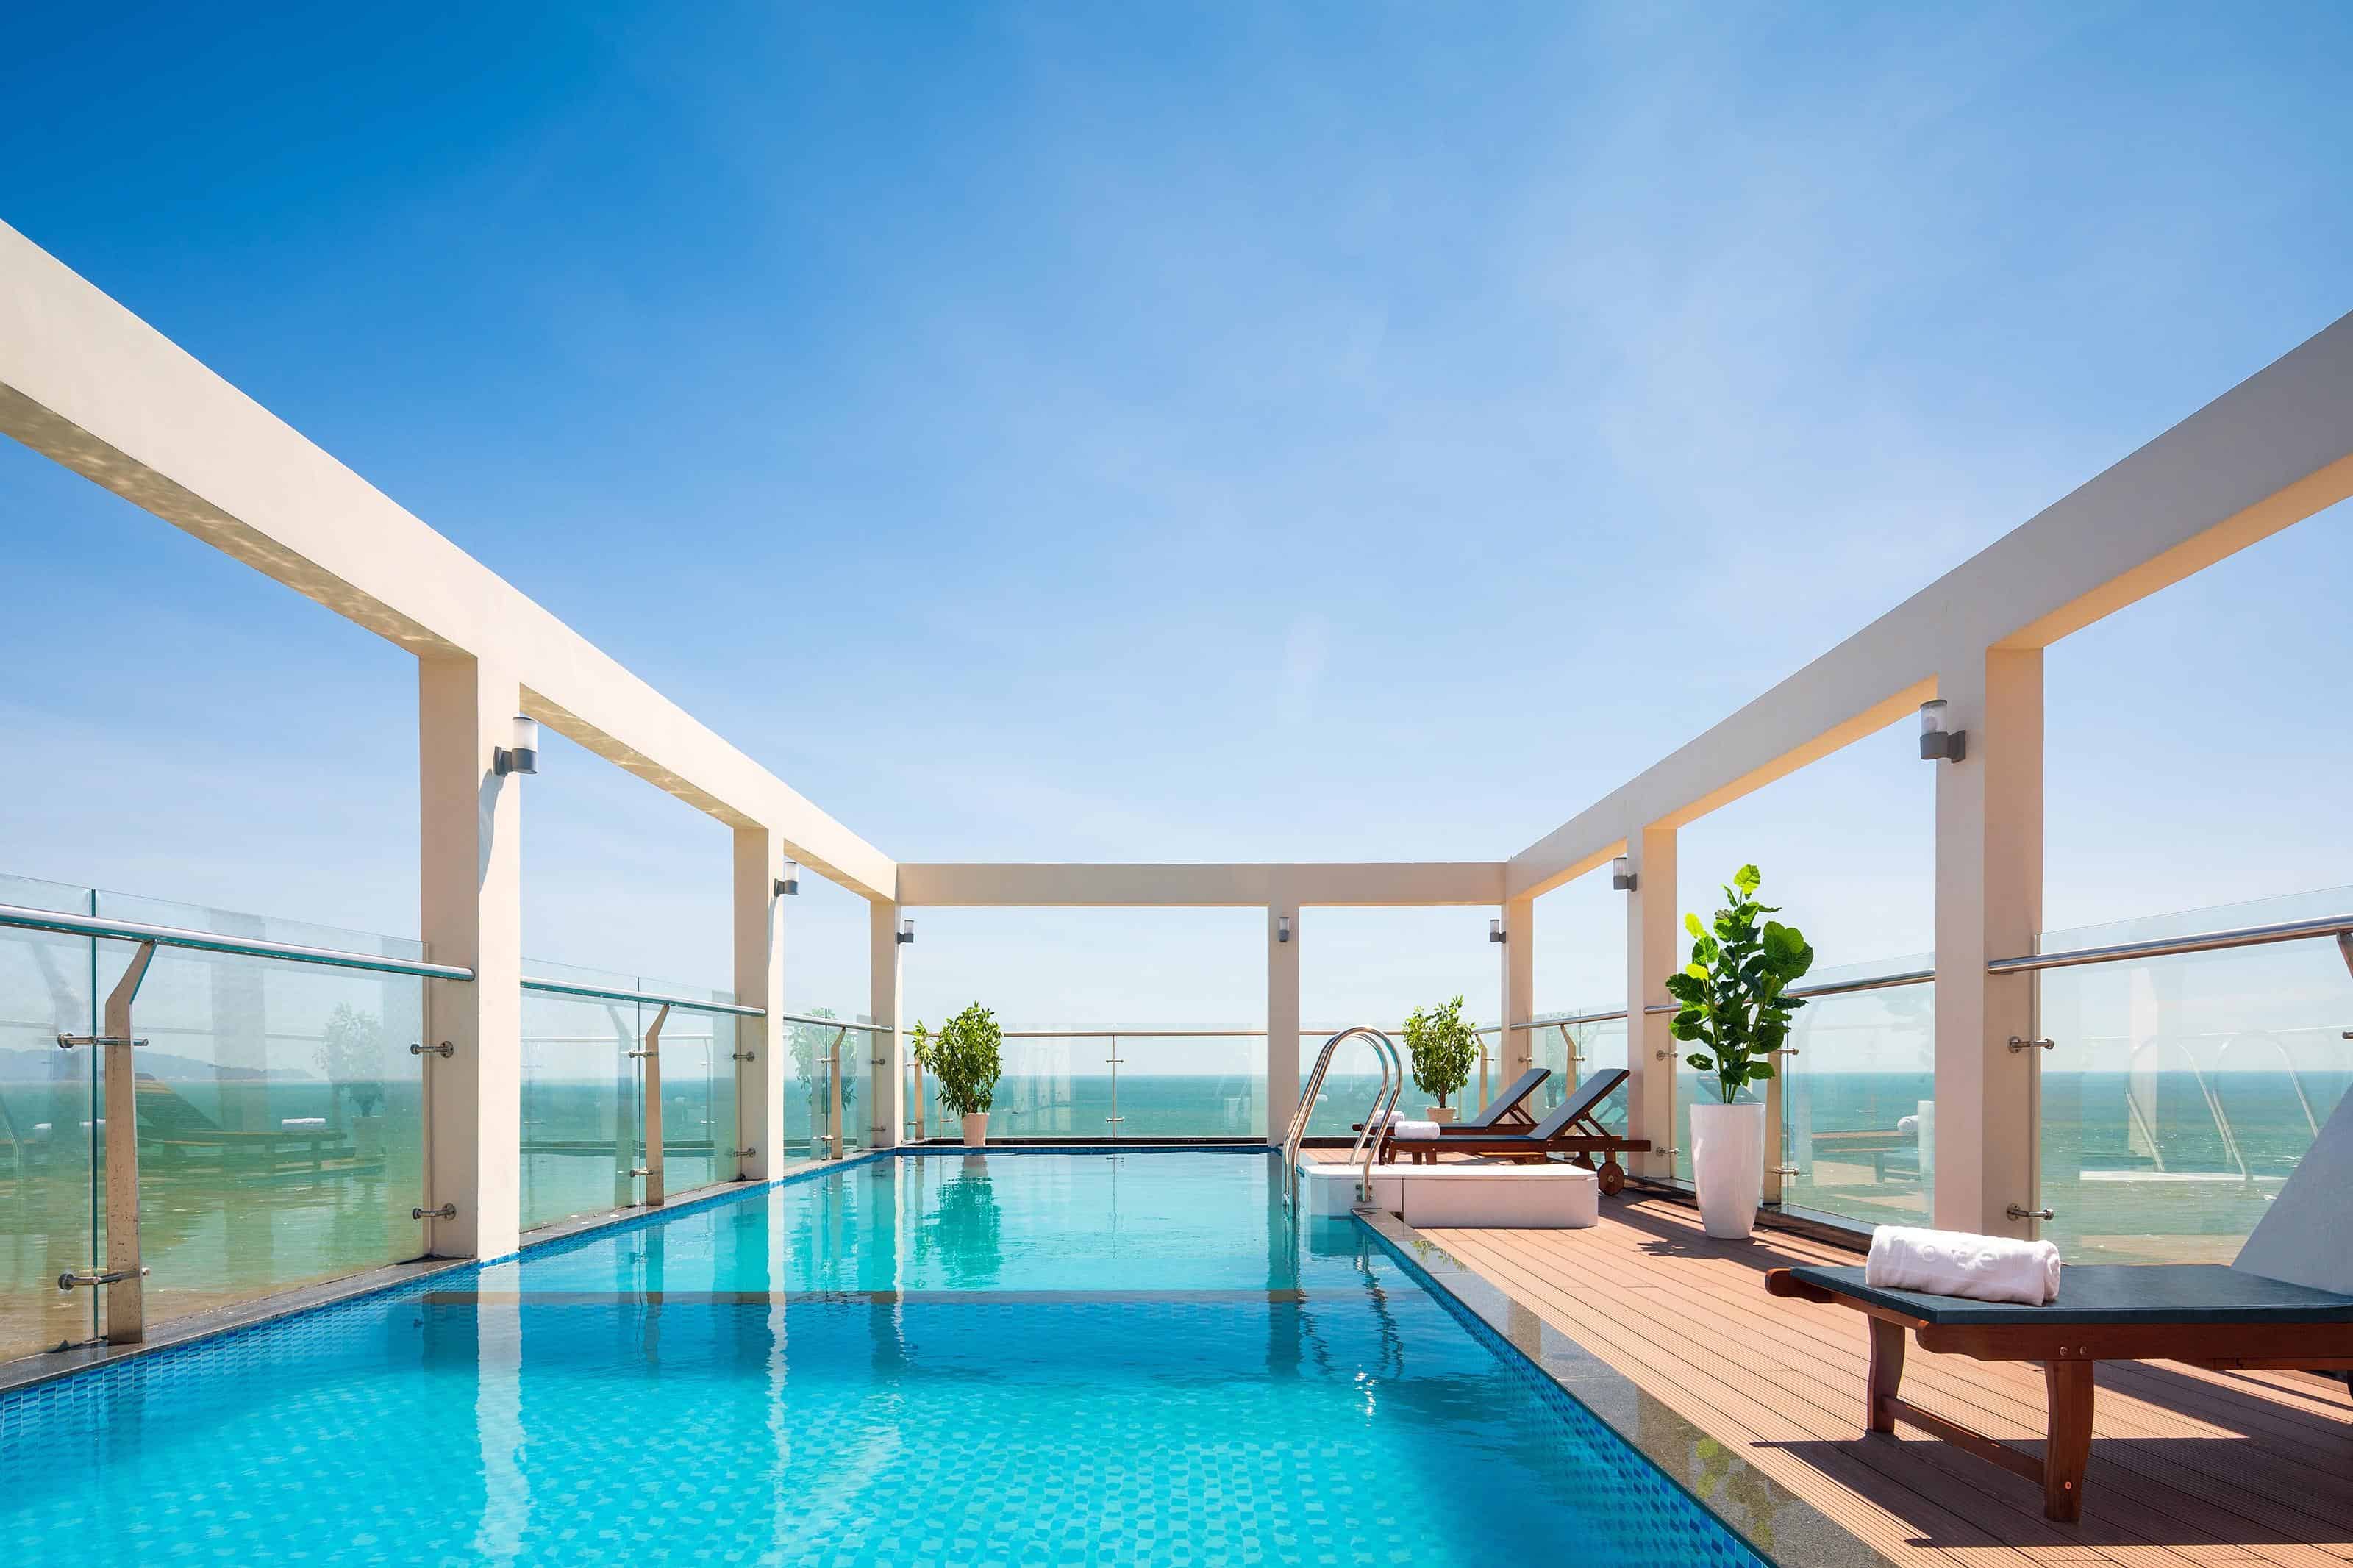 Corvin Vũng Tàu, một khách sạn tọa lạc tại Vũng Tàu, mang đến cho du khách một trải nghiệm độc đáo với một bể bơi riêng.